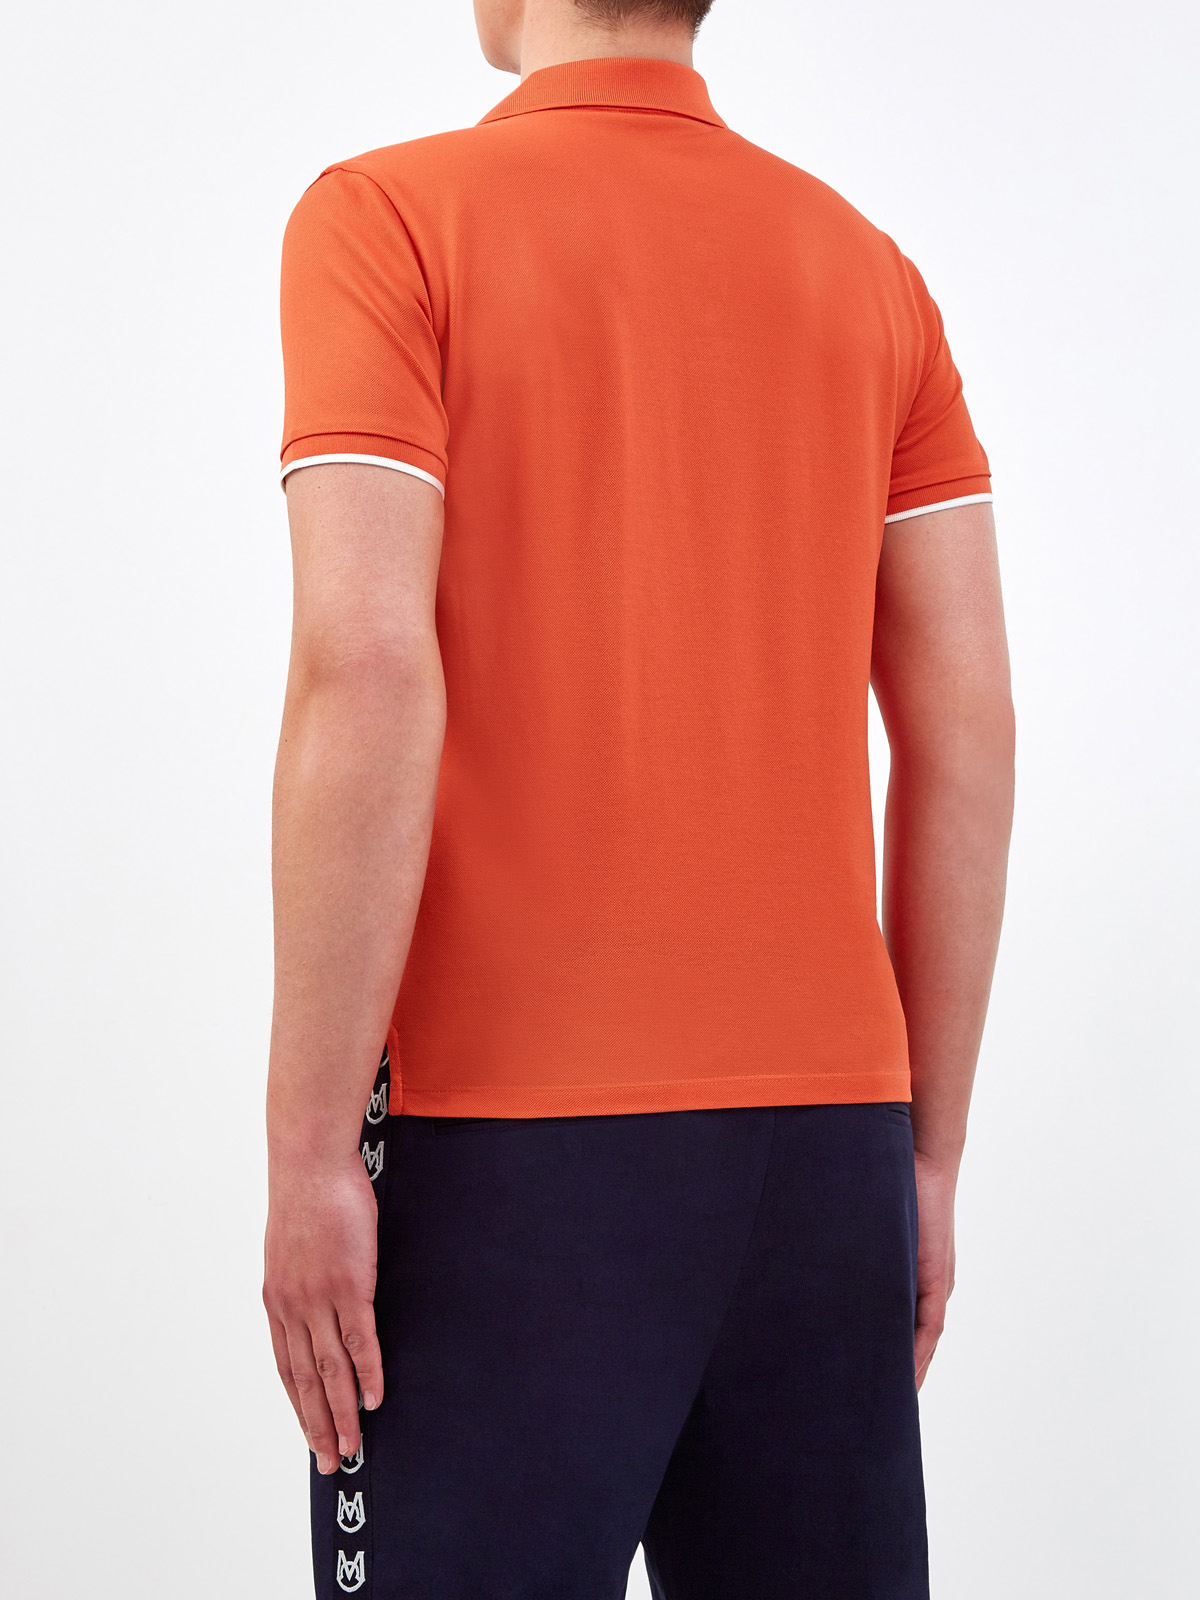 Поло из хлопкового пике с объемным логотипом бренда MONCLER, цвет оранжевый, размер M;L;2XL - фото 4